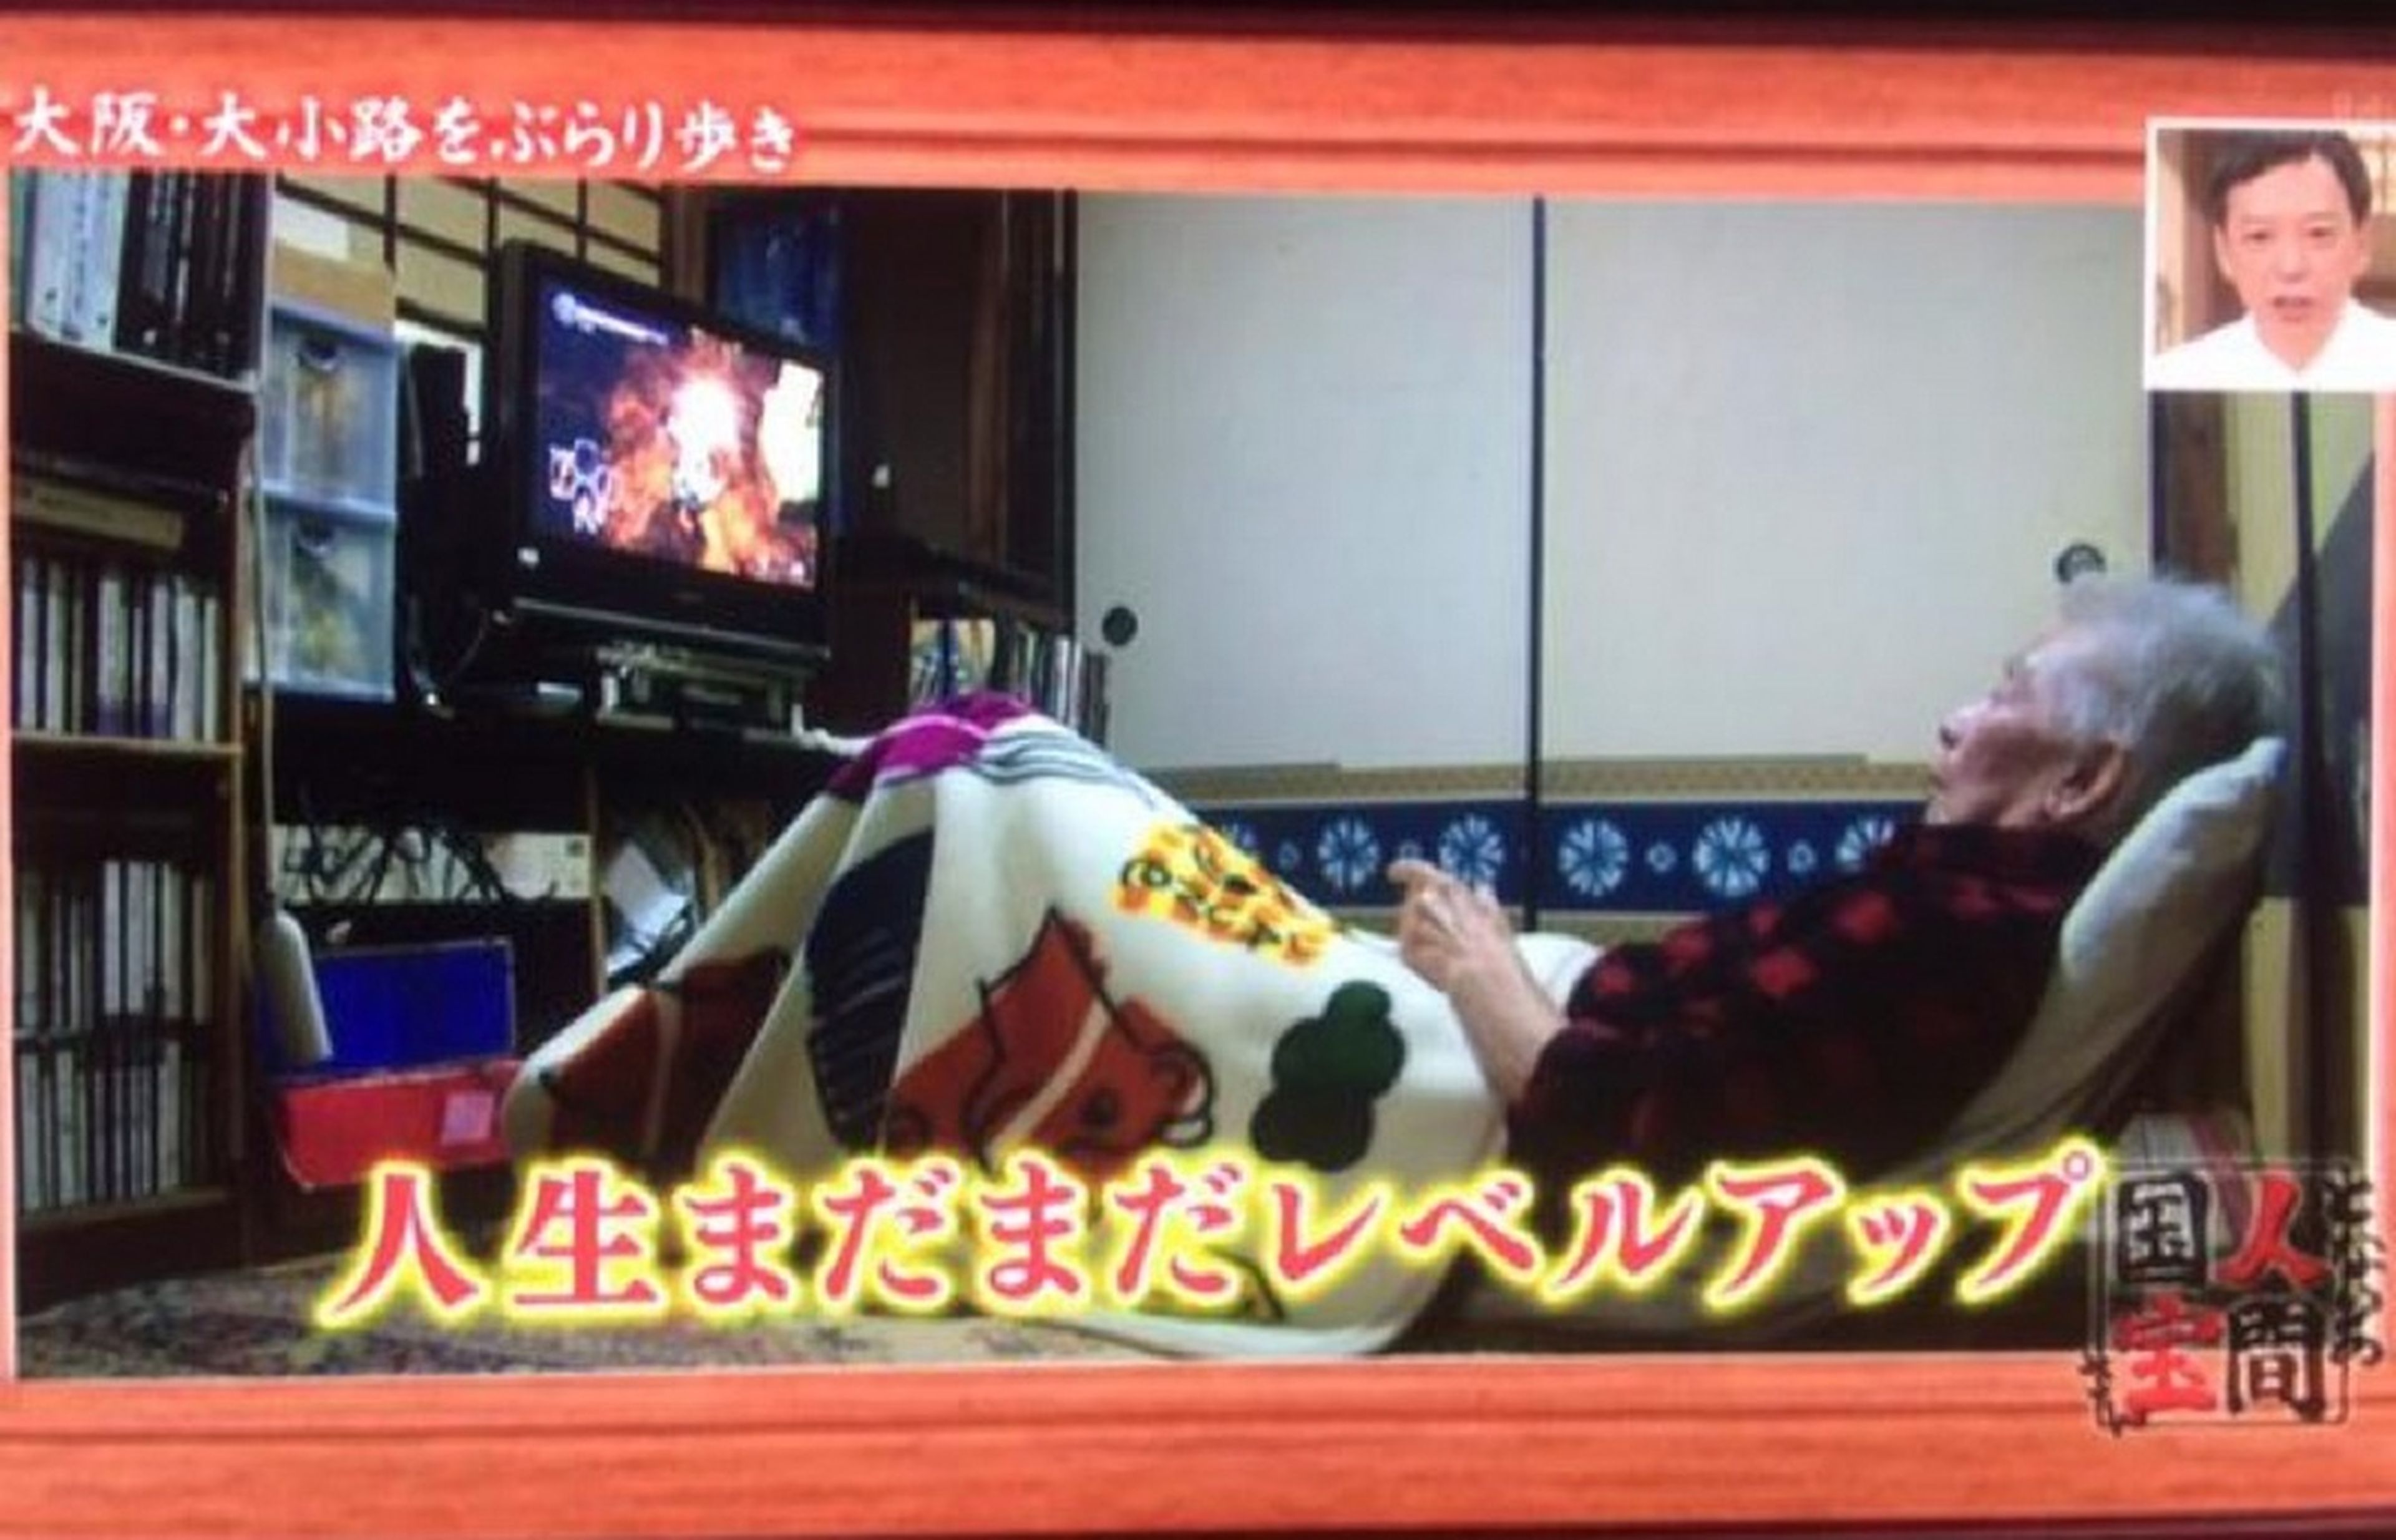 Esta japonesa tiene 99 años y lleva 26 años terminándose Bomberman todos los días